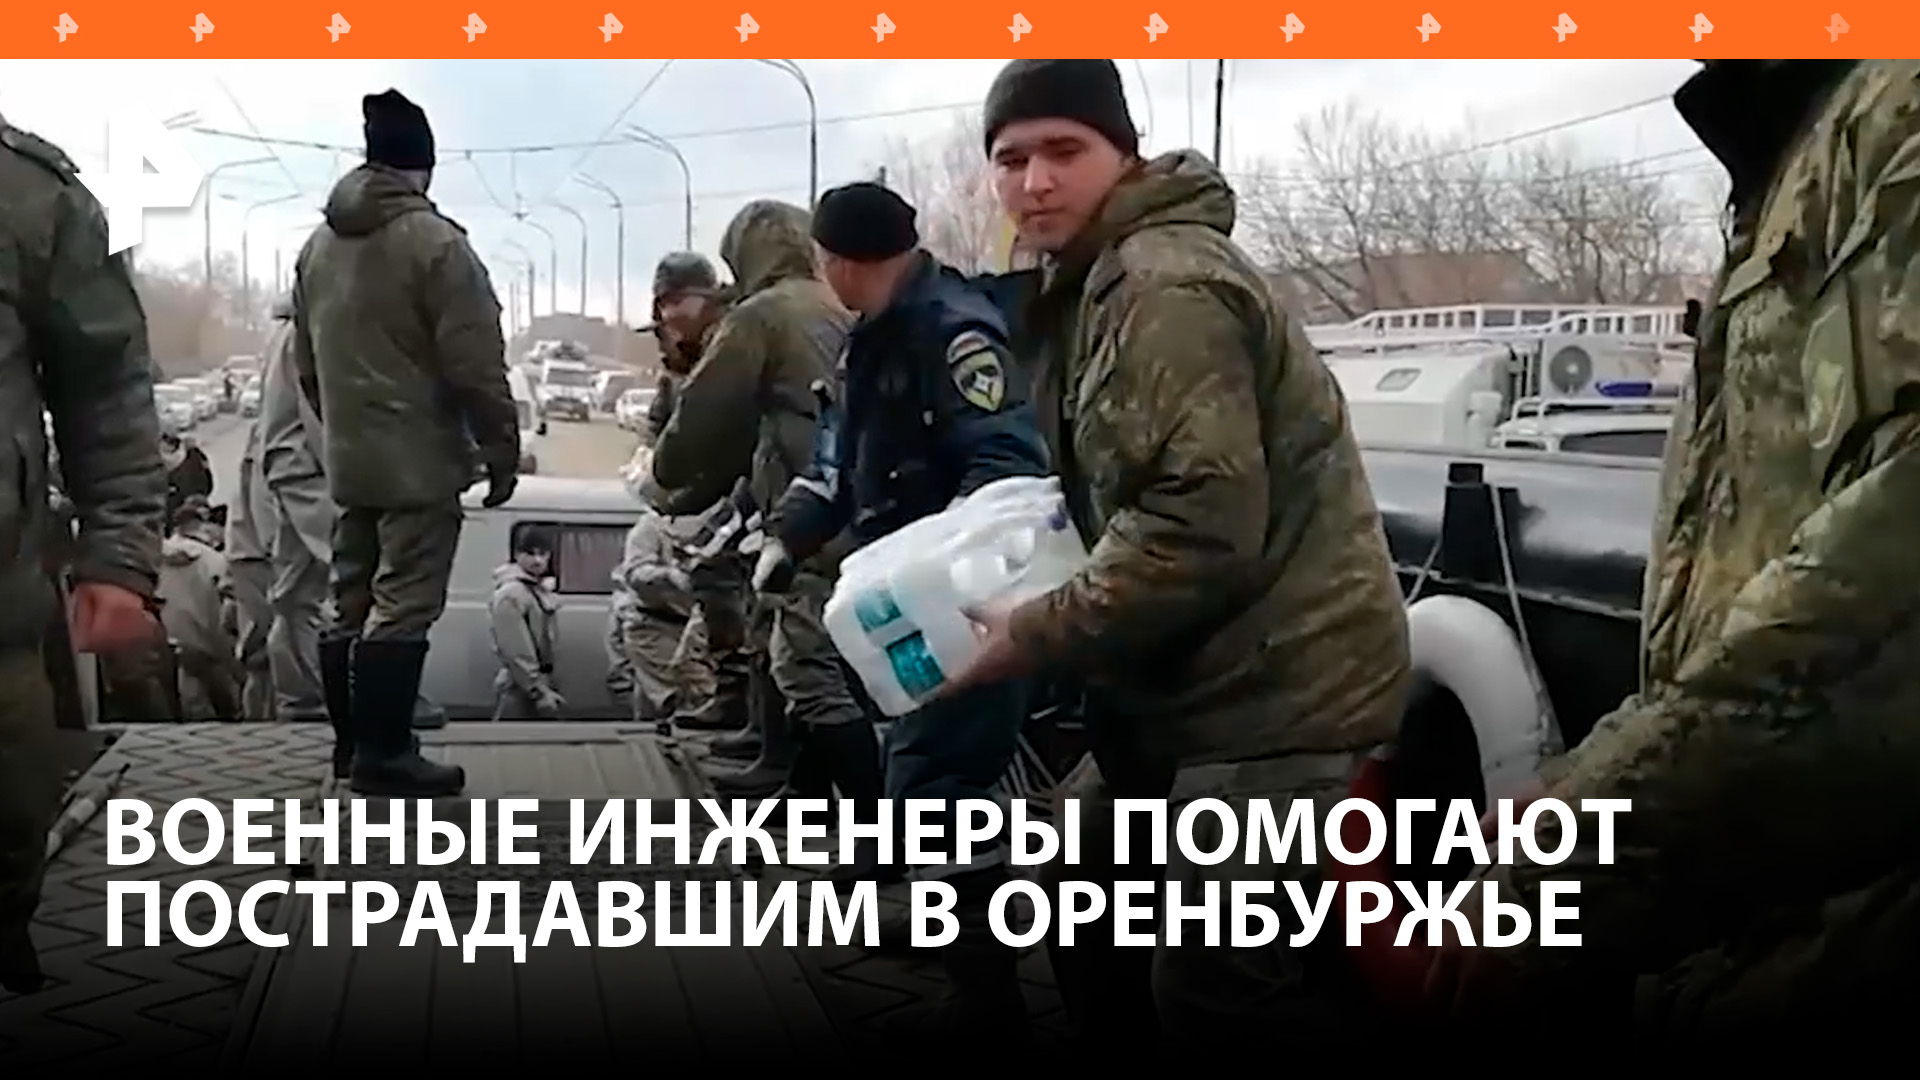 Военные инженеры помогают пострадавшим от паводка в Оренбуржье / РЕН Новости